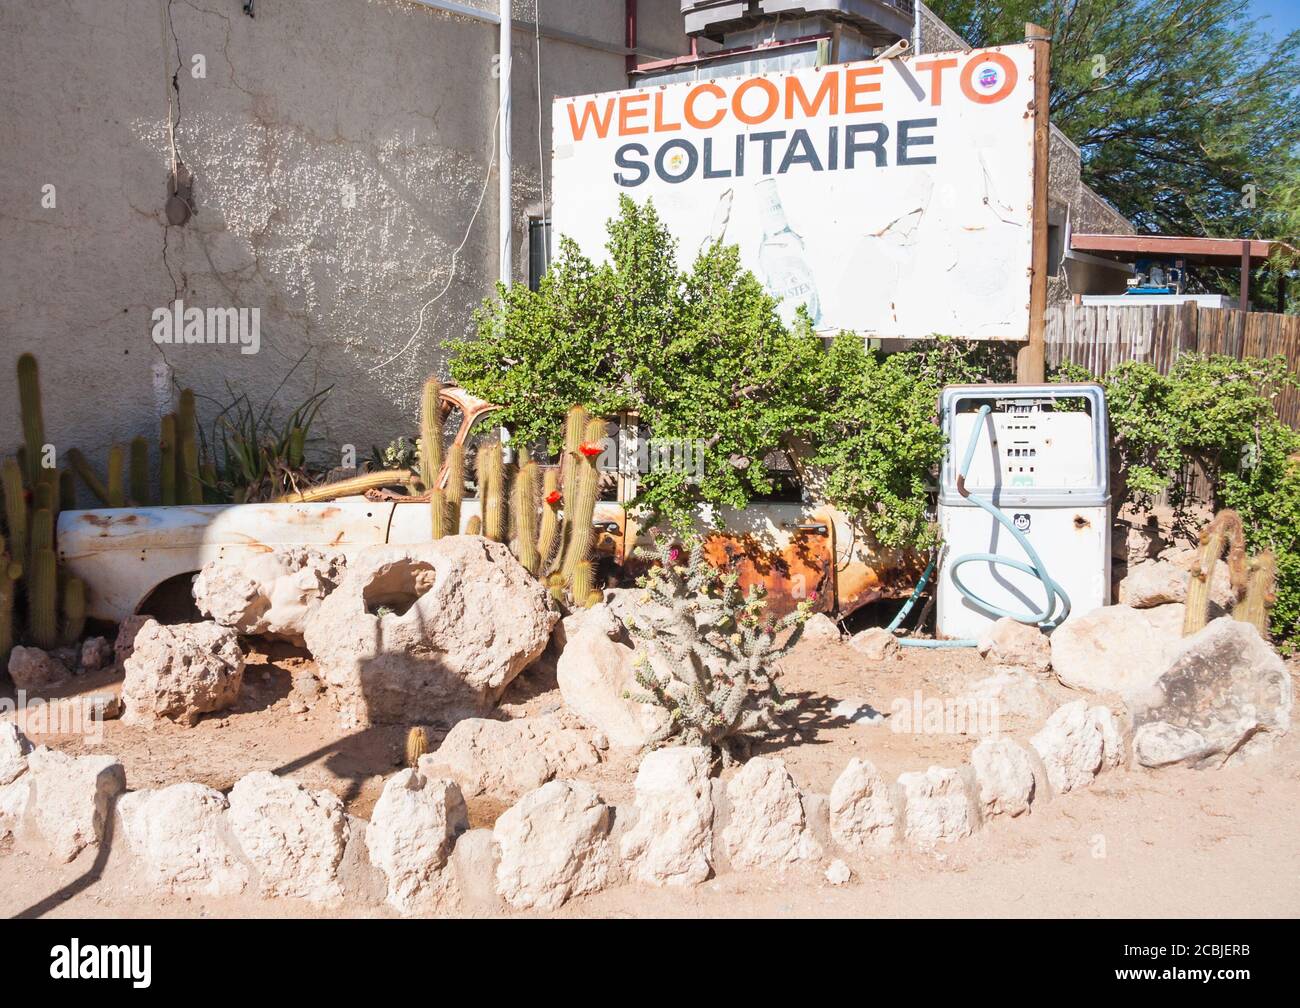 Solitaire, Namibia Nov 30 2016: Willkommensschild an der Solitaire Service Station. Dies ist ein ikonischer Touristenstopp mitten in der Wüste Namibias. Stockfoto